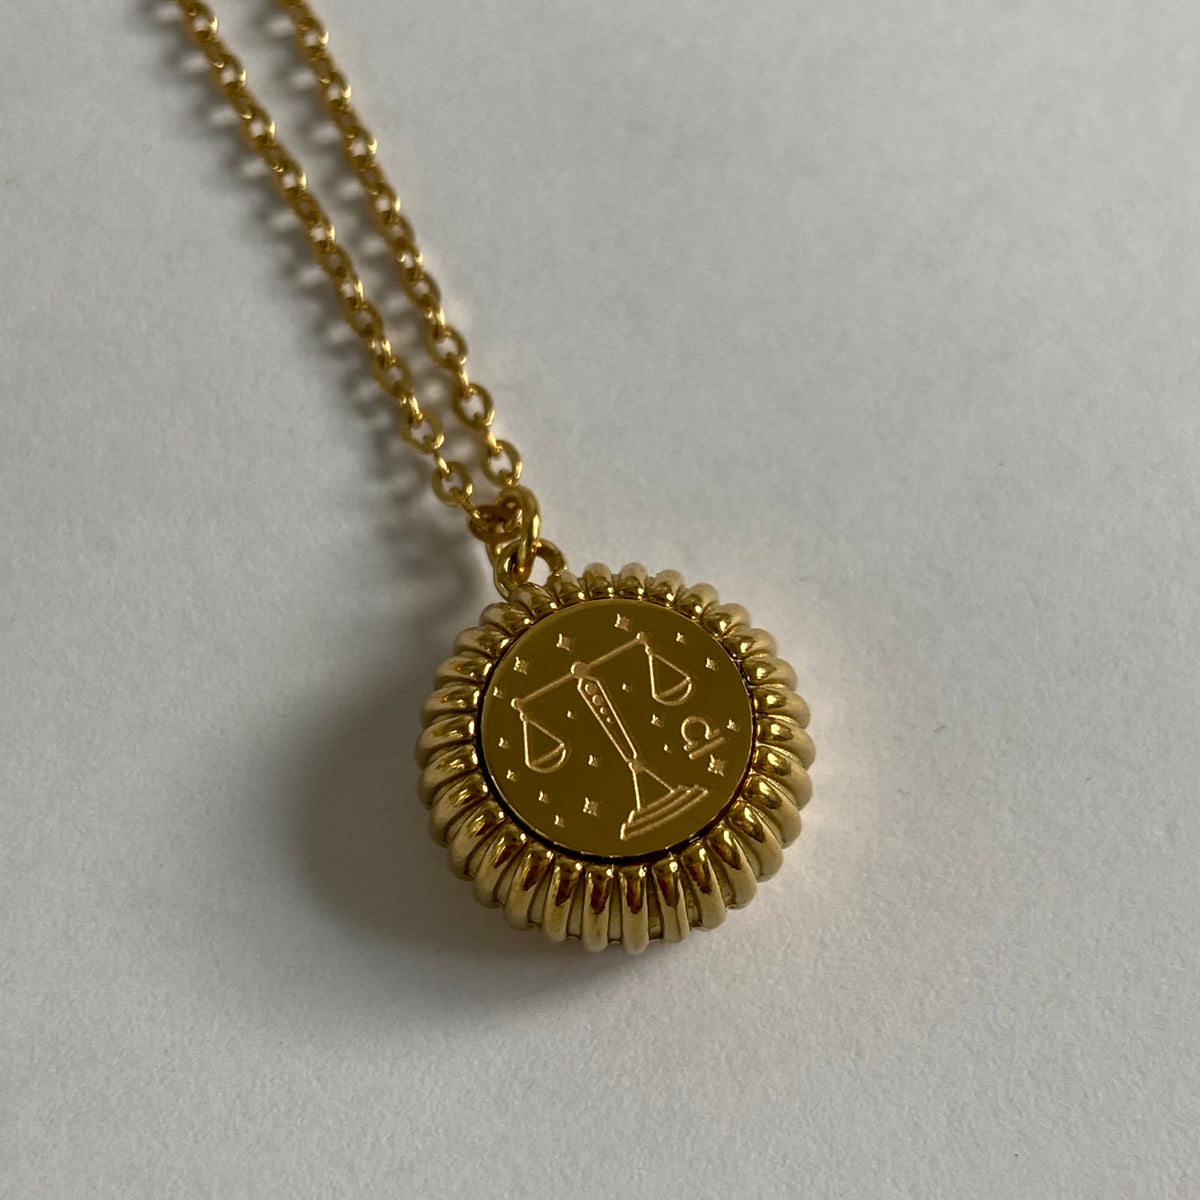 Round Horoscope necklace